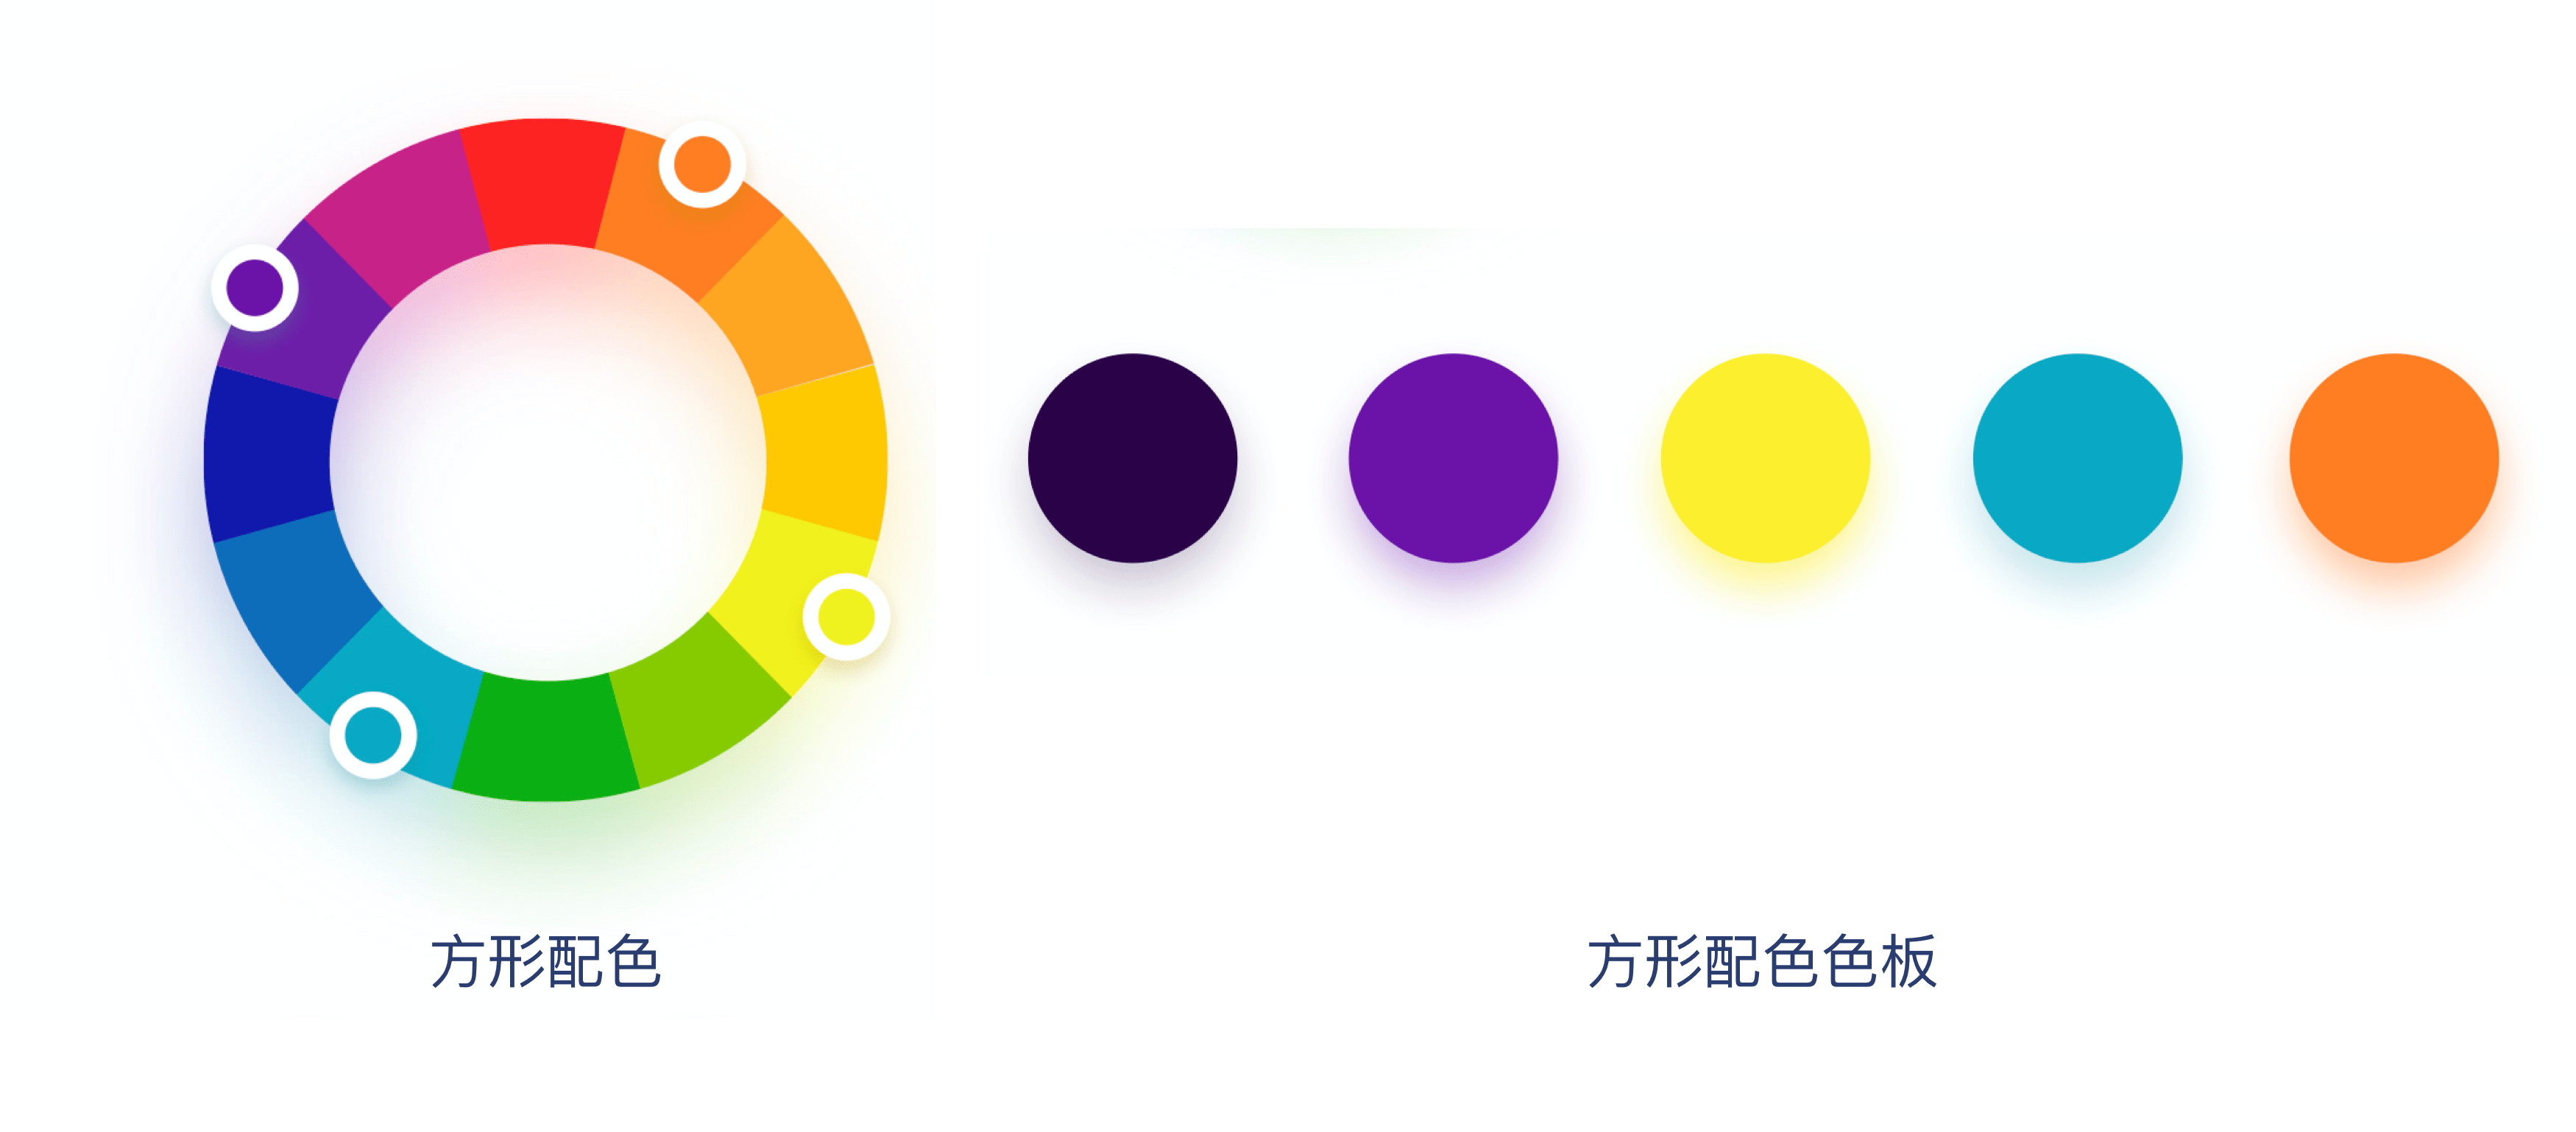 墨言教育分享丨7种配色方案 配色法则,让设计更吸引力